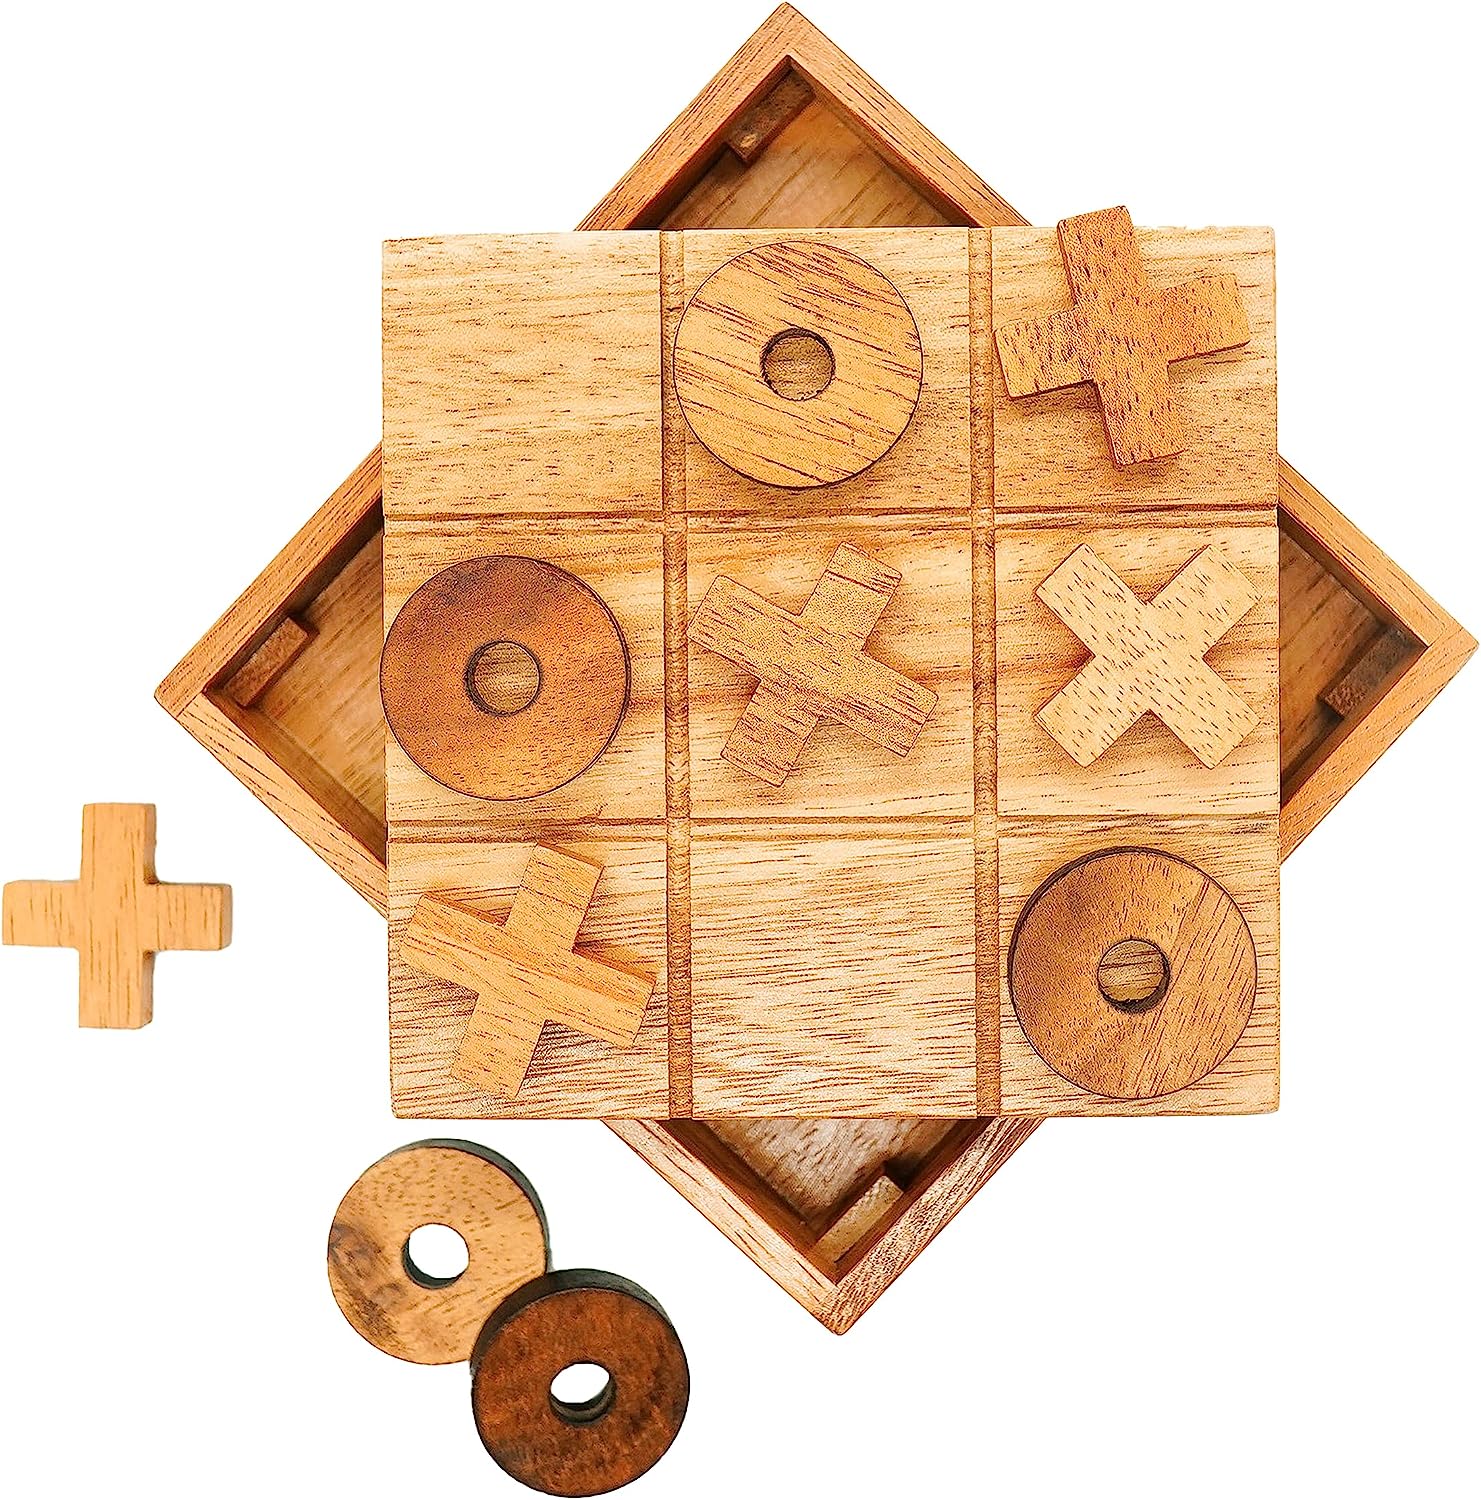 【OOXX】BSIRI 木製棋盤遊戲 $9.99